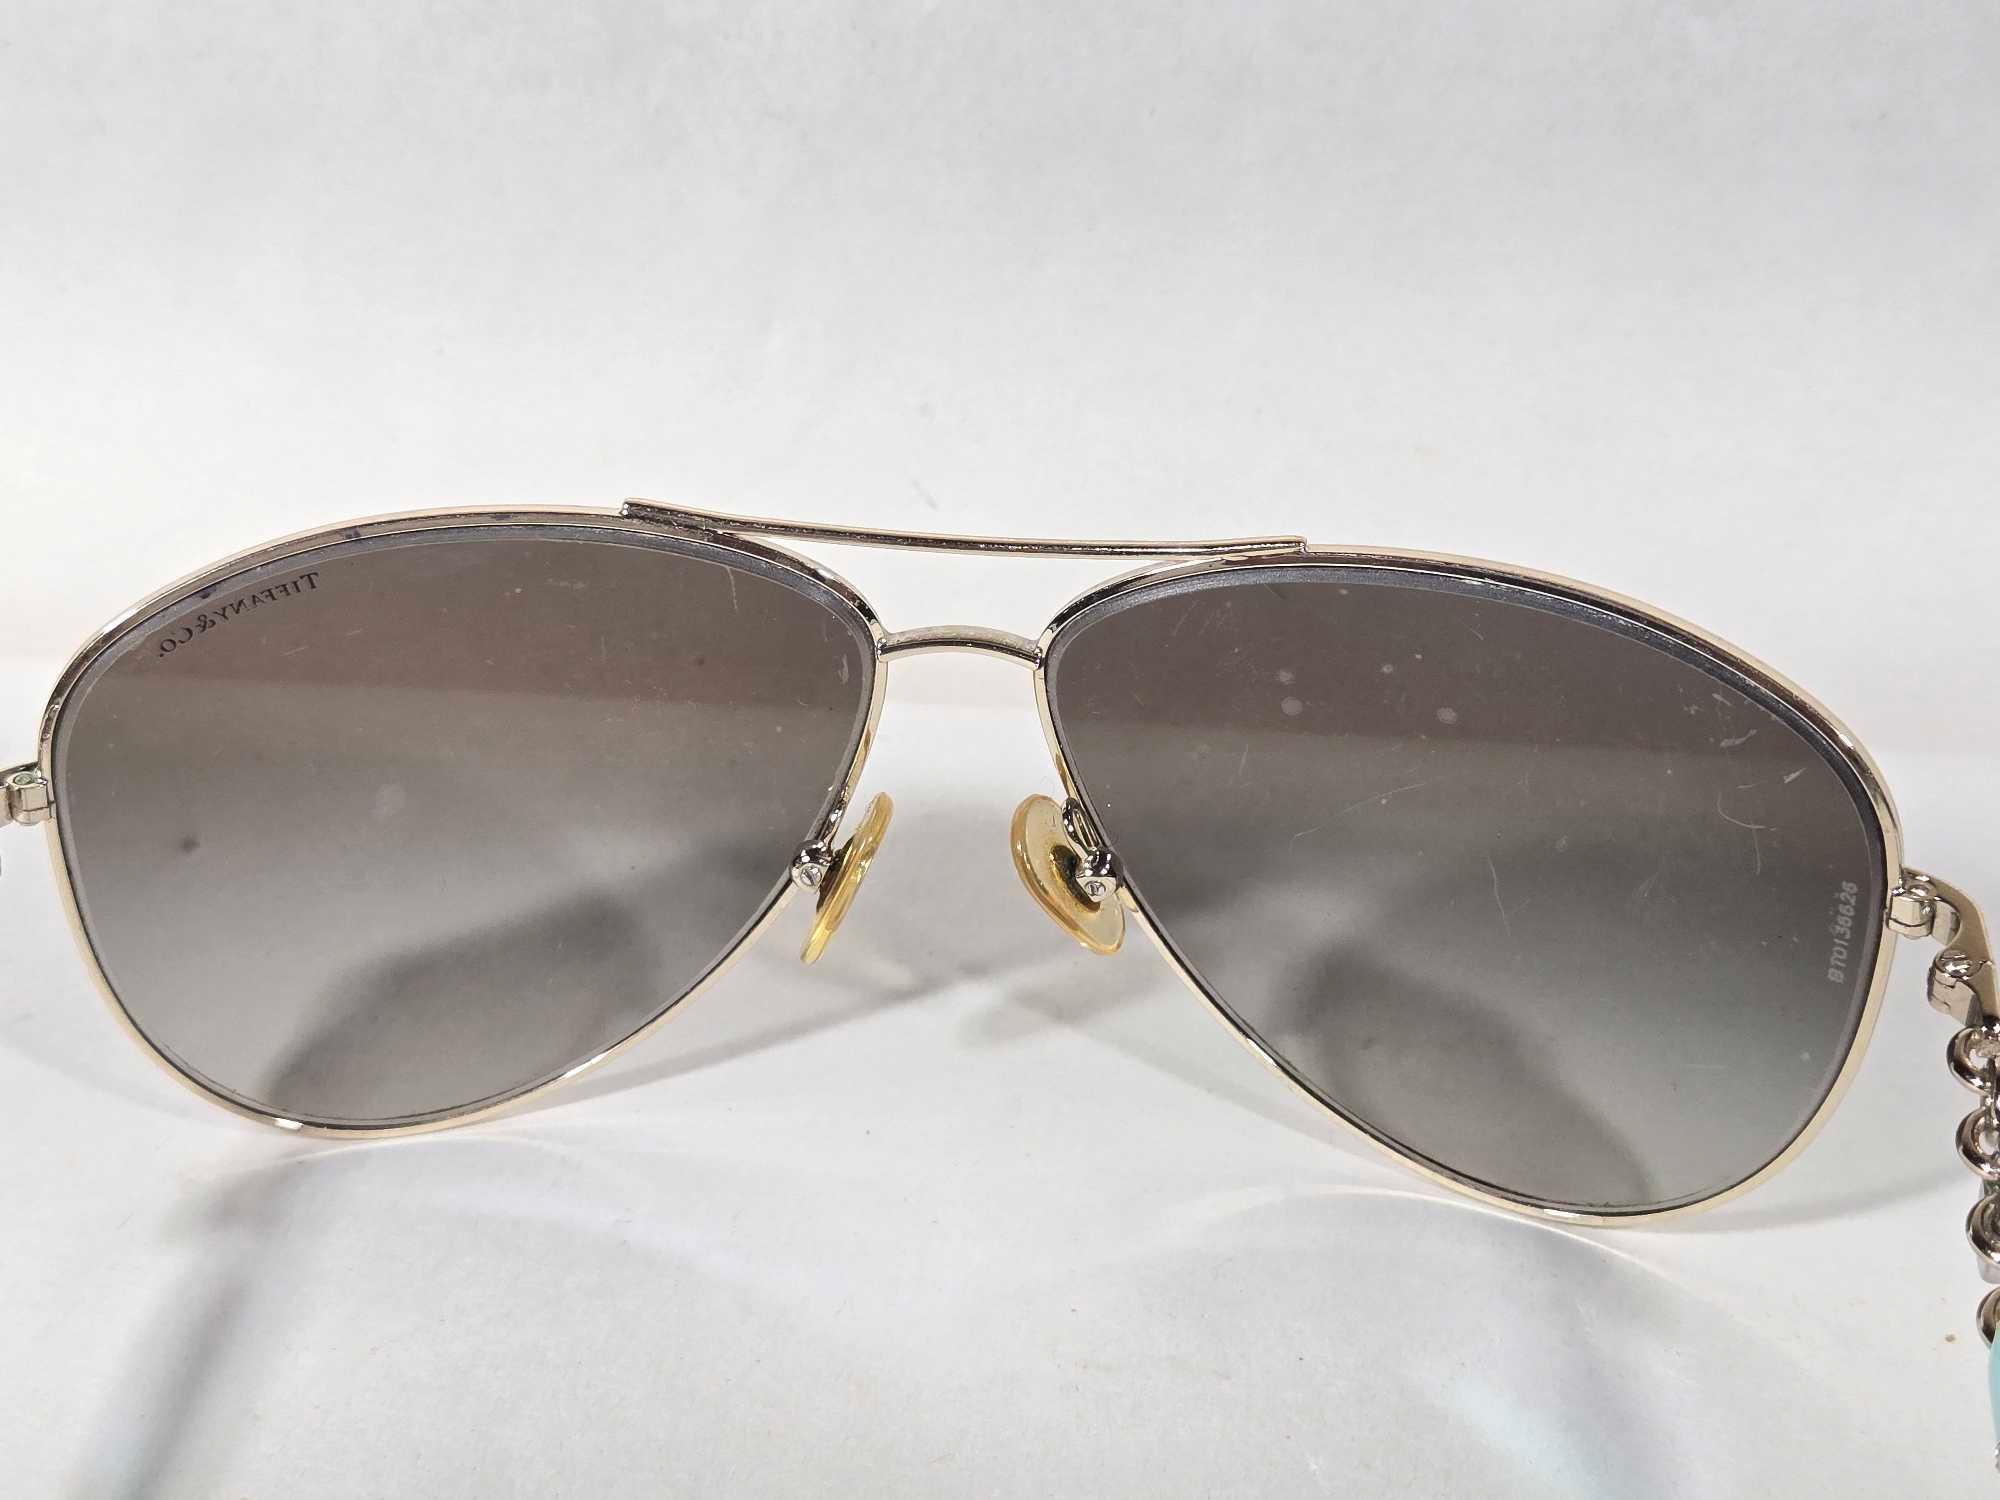 4 Pair of Women's Vintage Sunglasses Incl. Coach